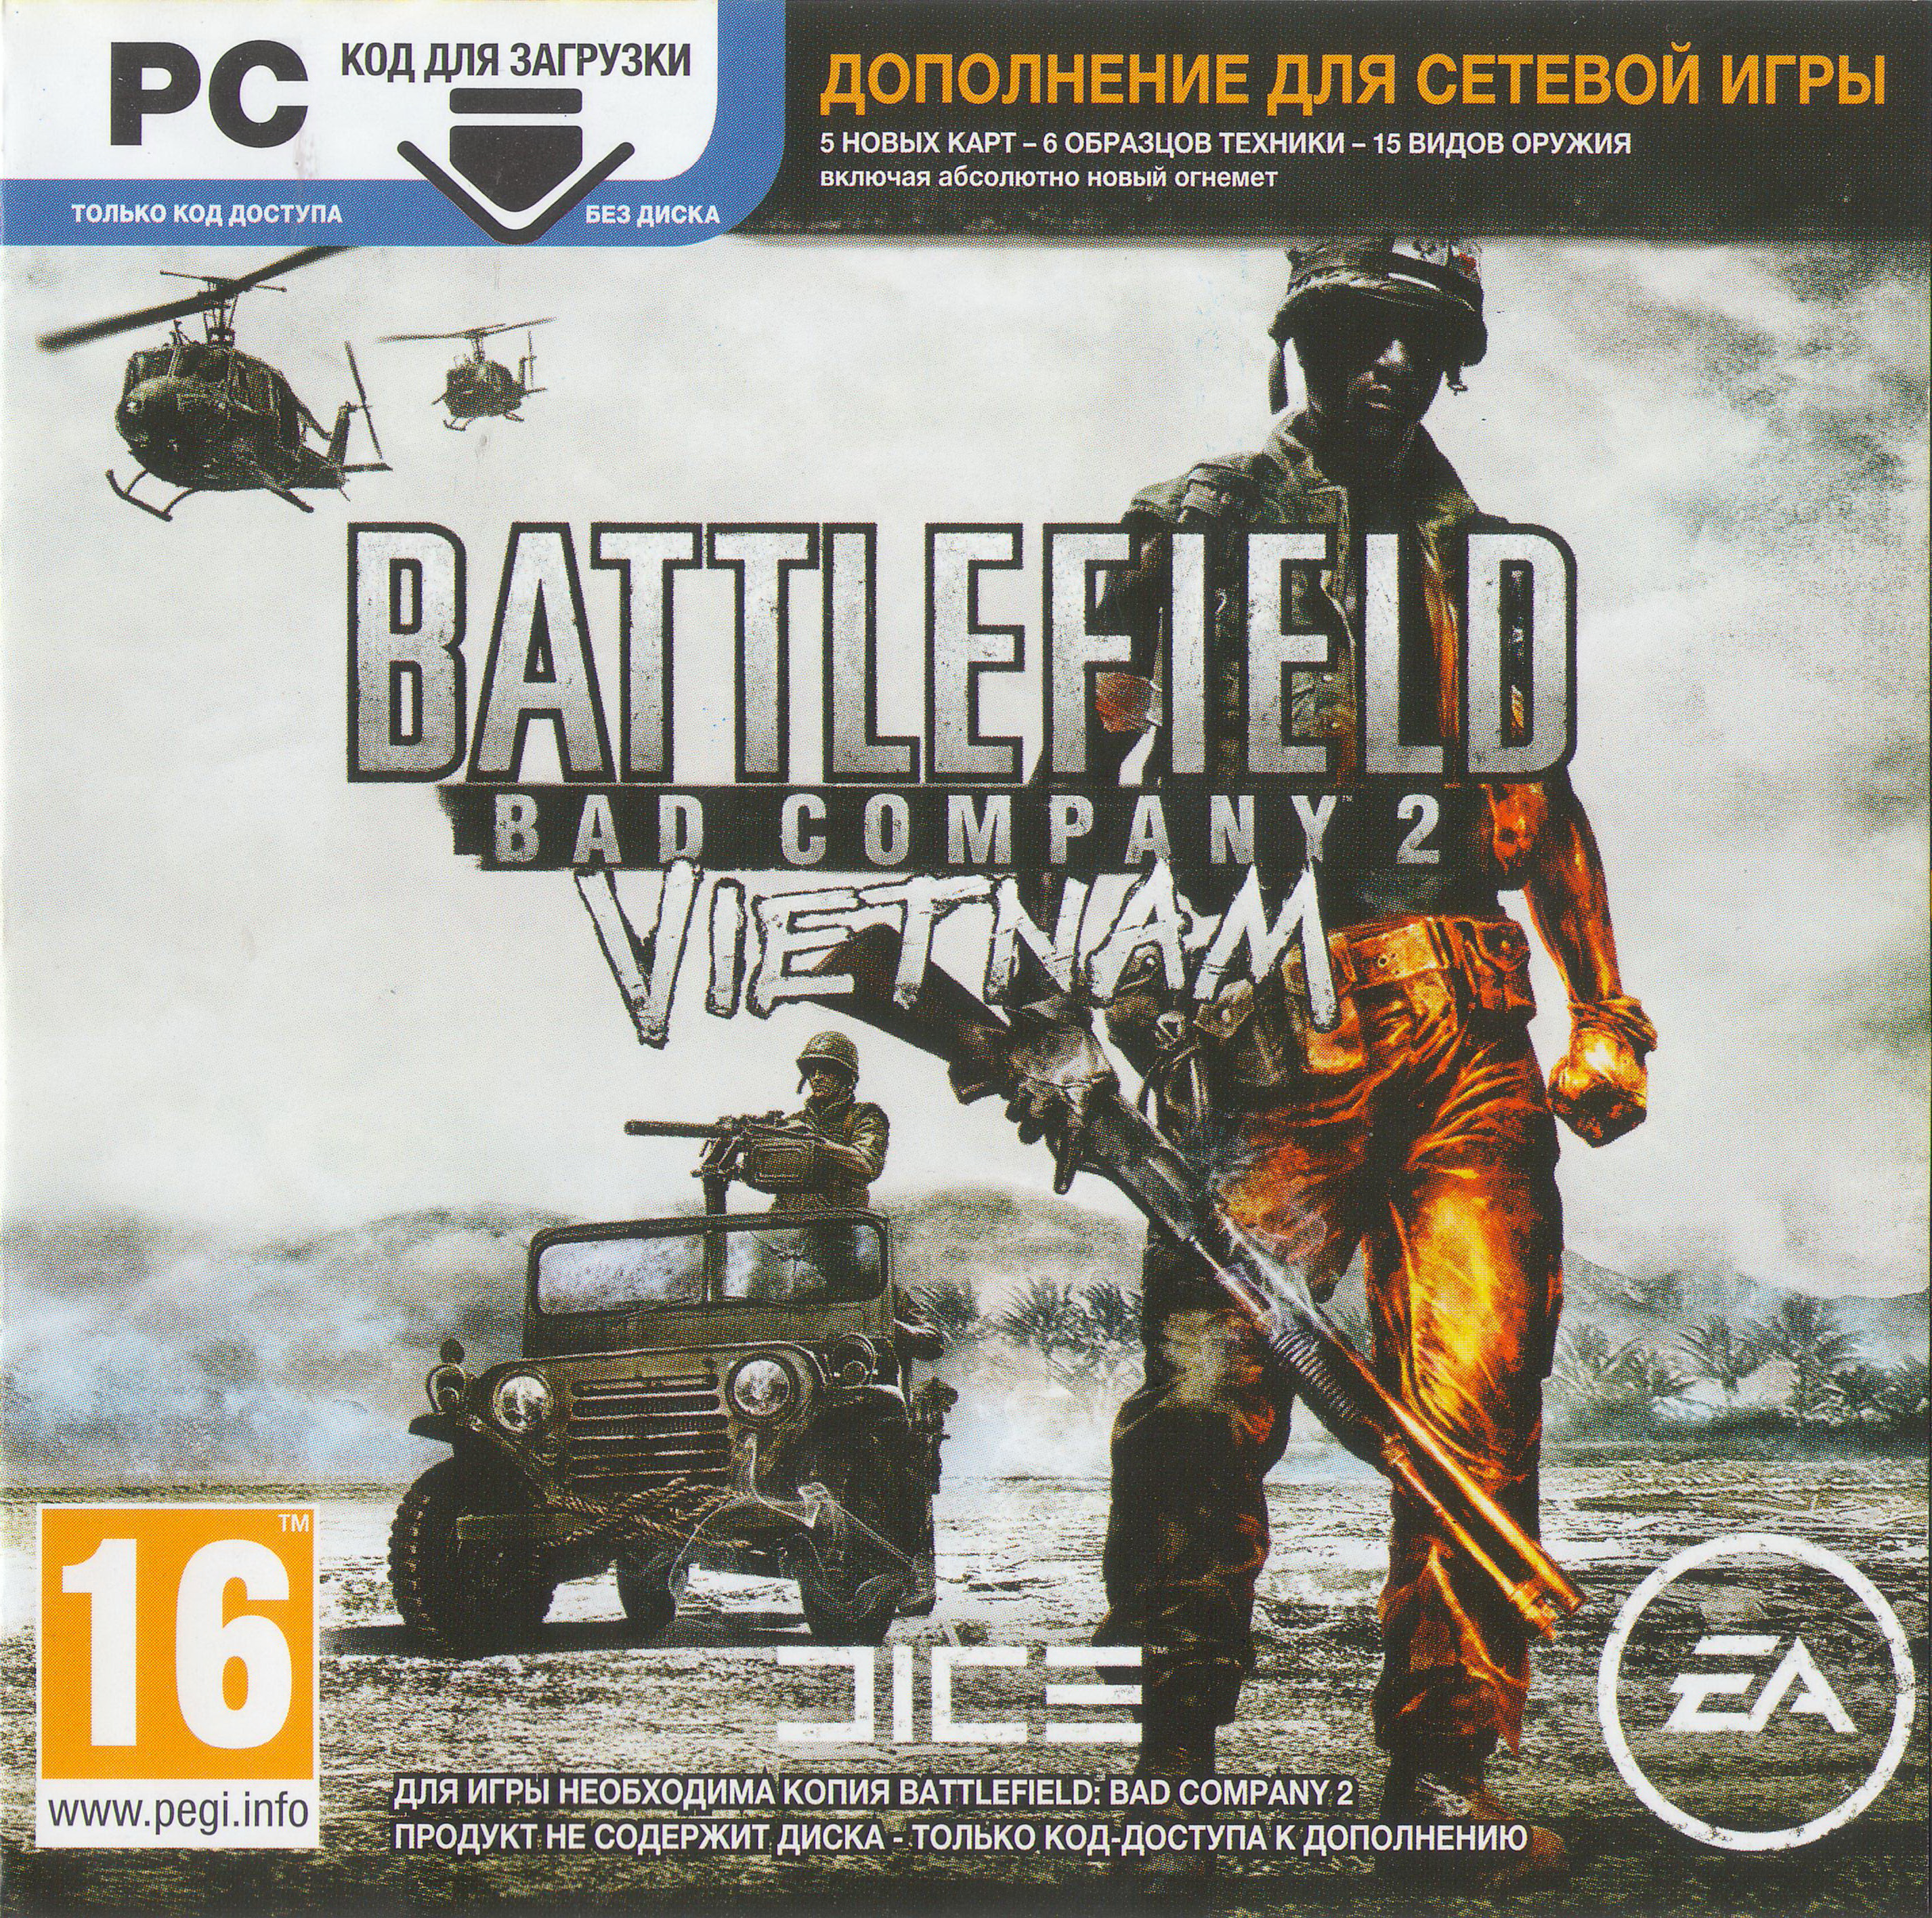 Купить Battlefield Bad Company 2 Vietnam (CD-KEY) .